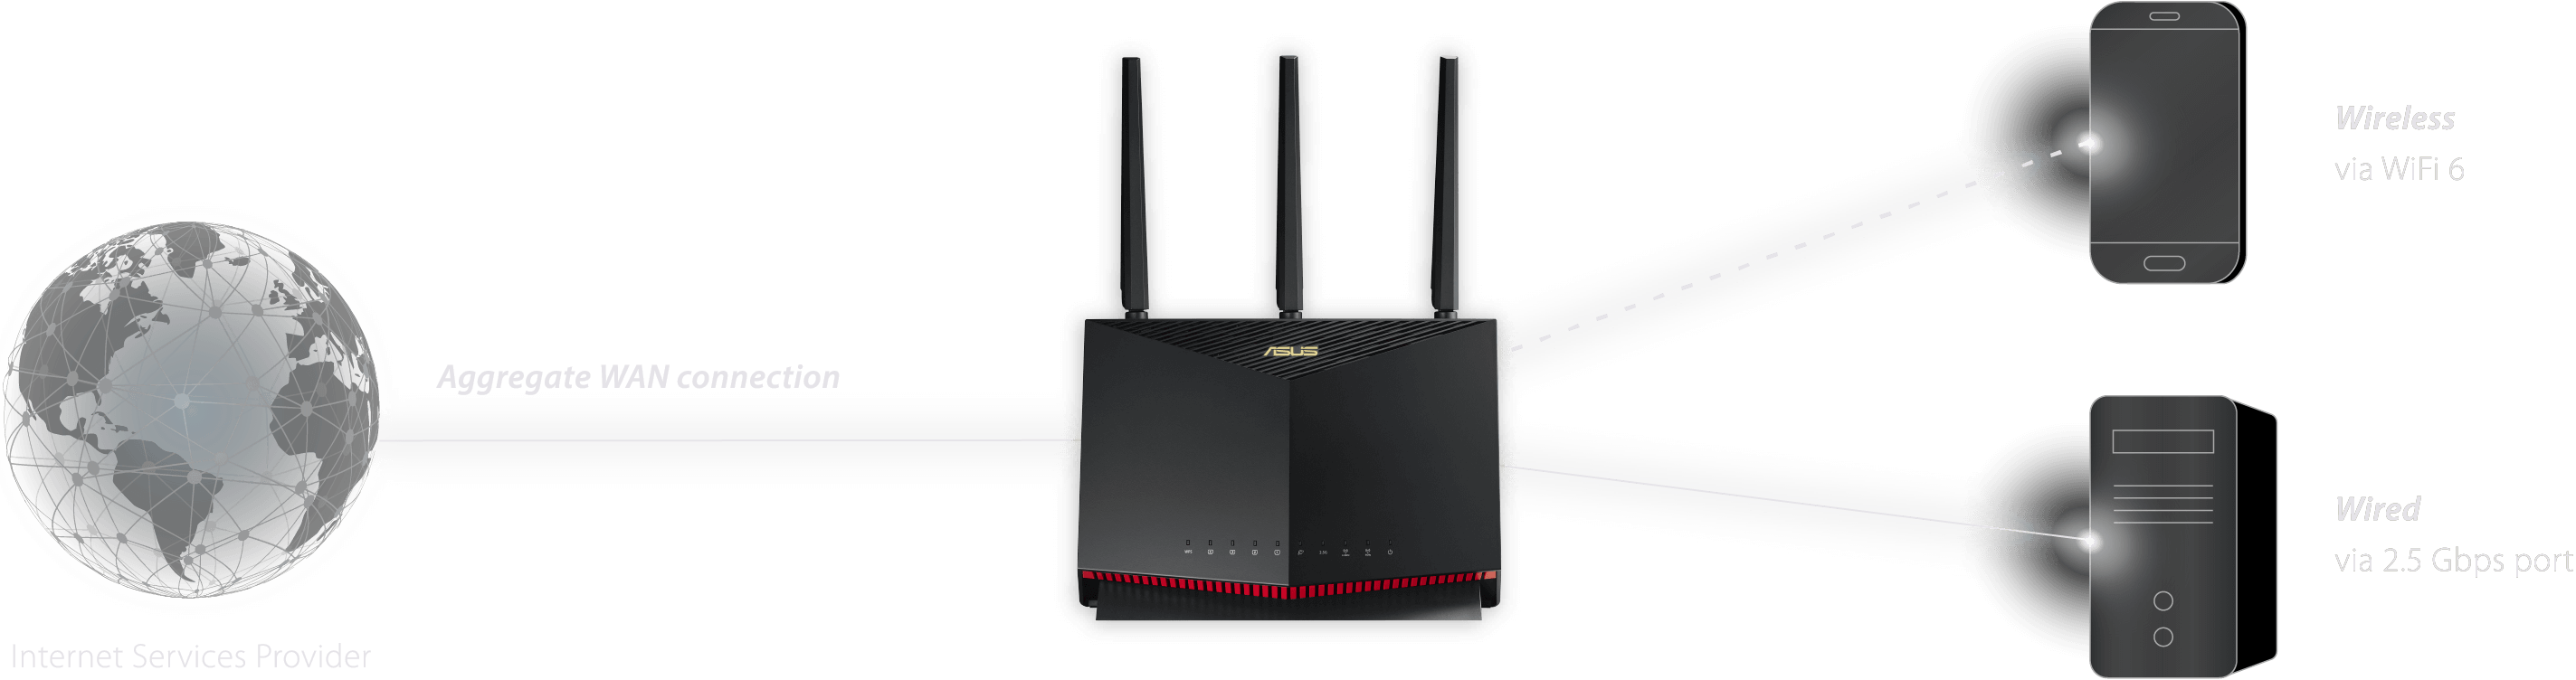 Videotron router configuration